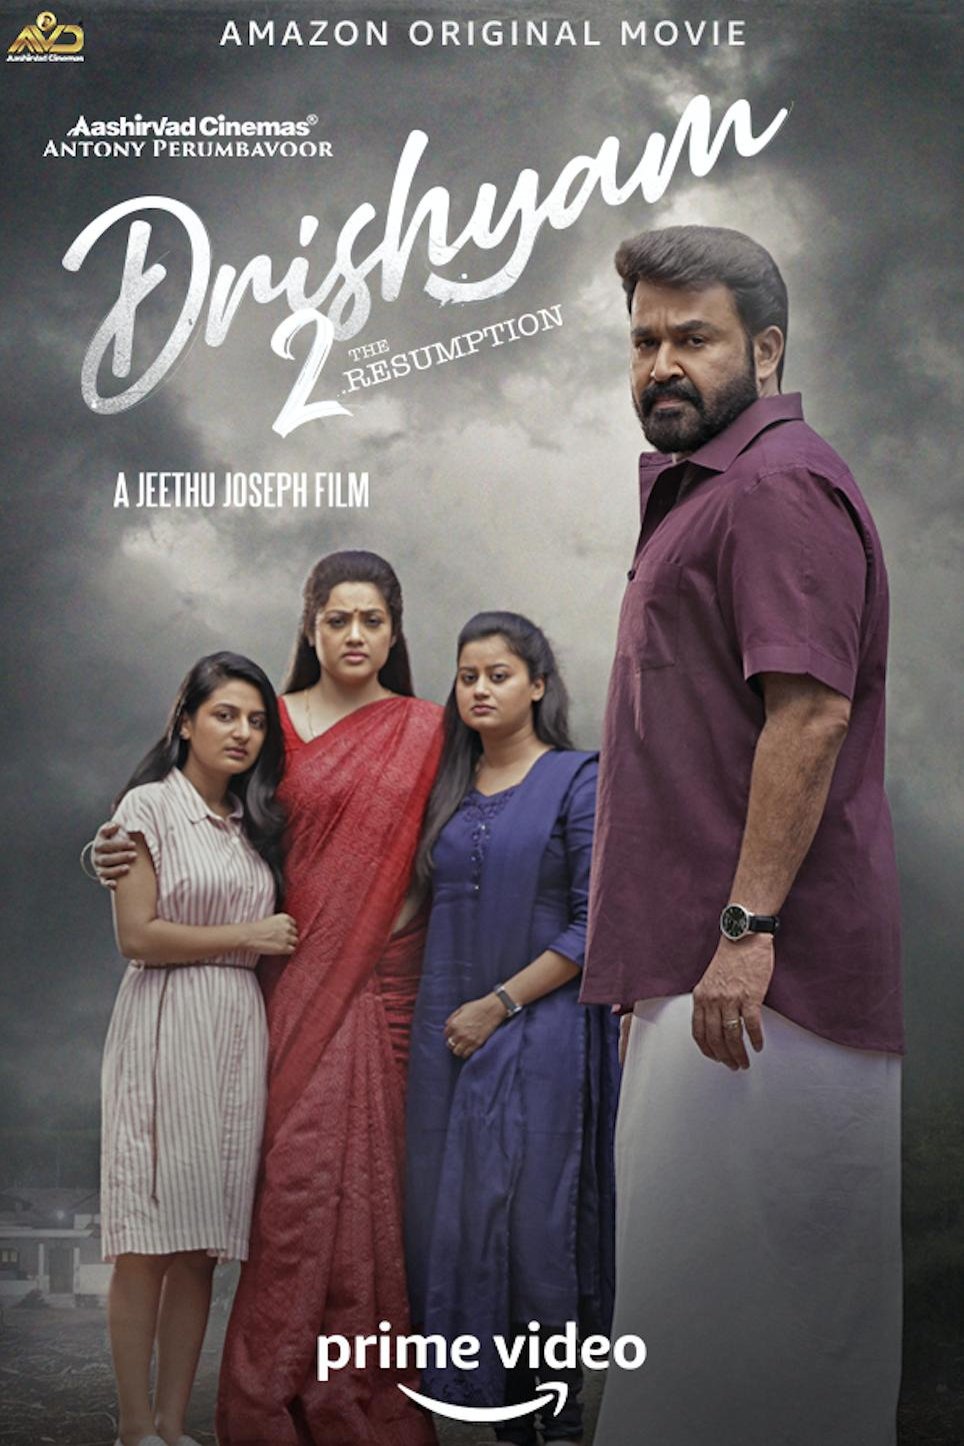 Malayalam poster of the movie Drishyam 2